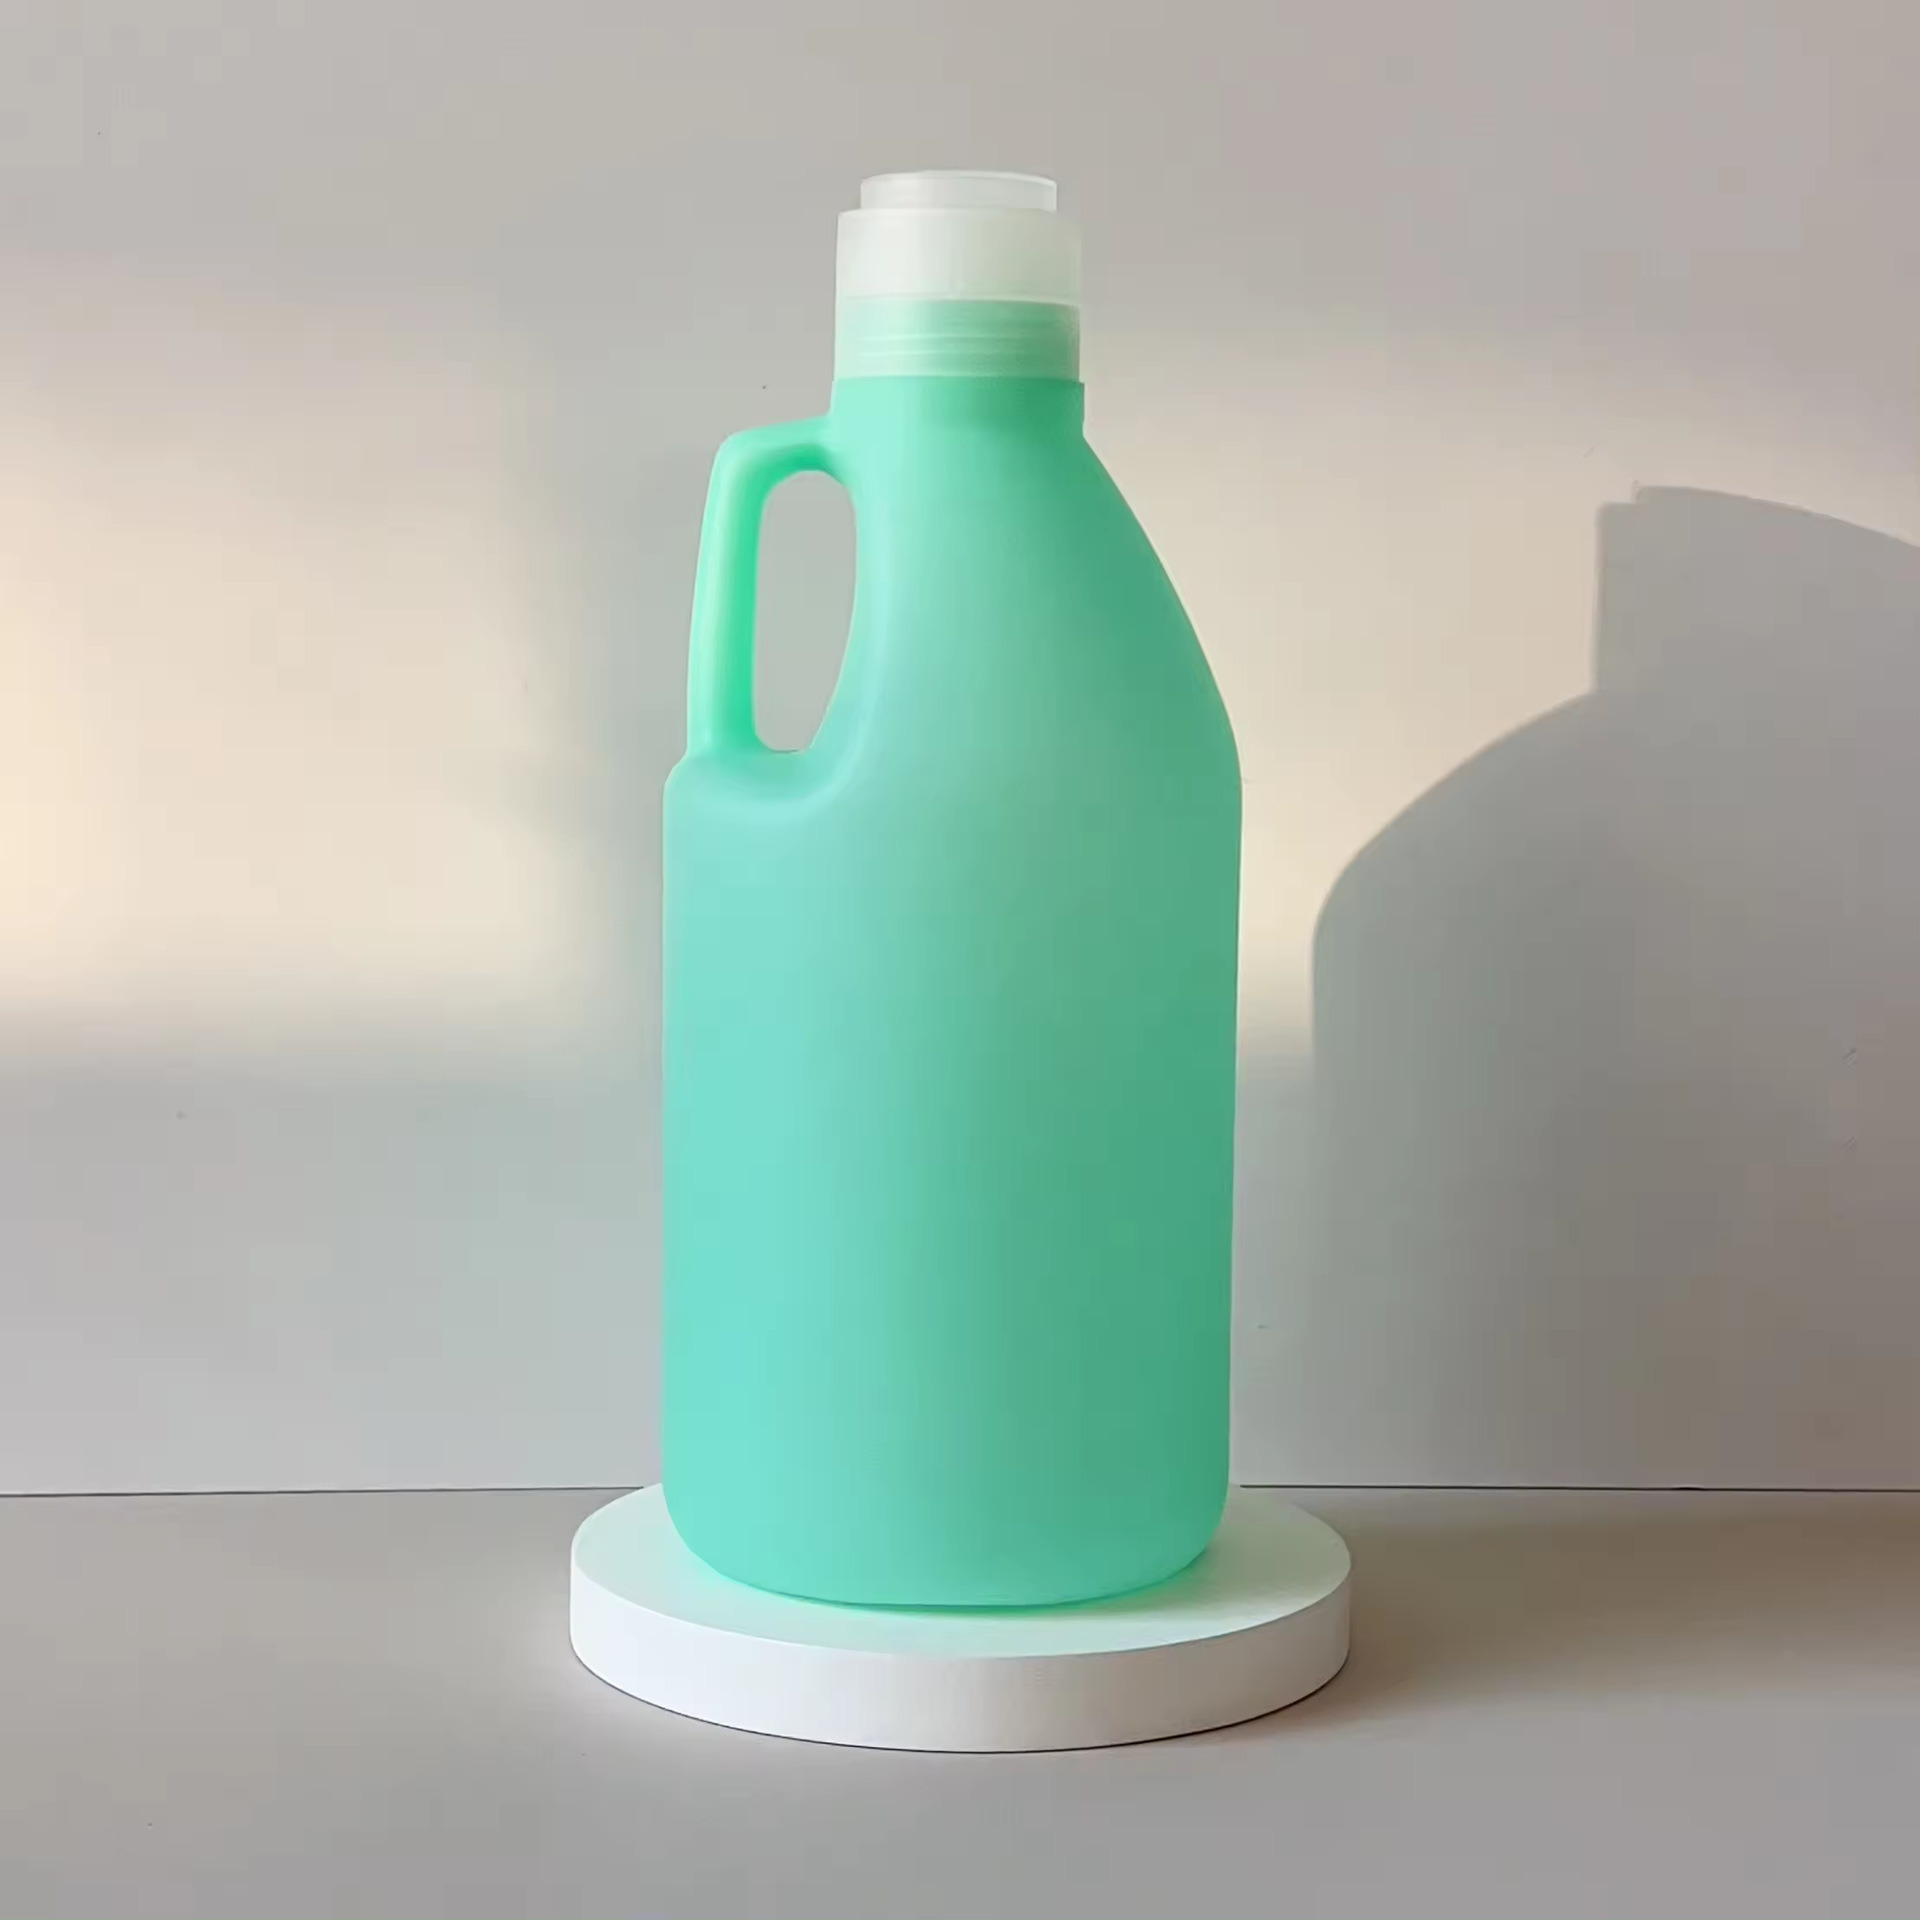 销售1895毫升白色圆形空HDPE塑料家用洗衣液散装瓶